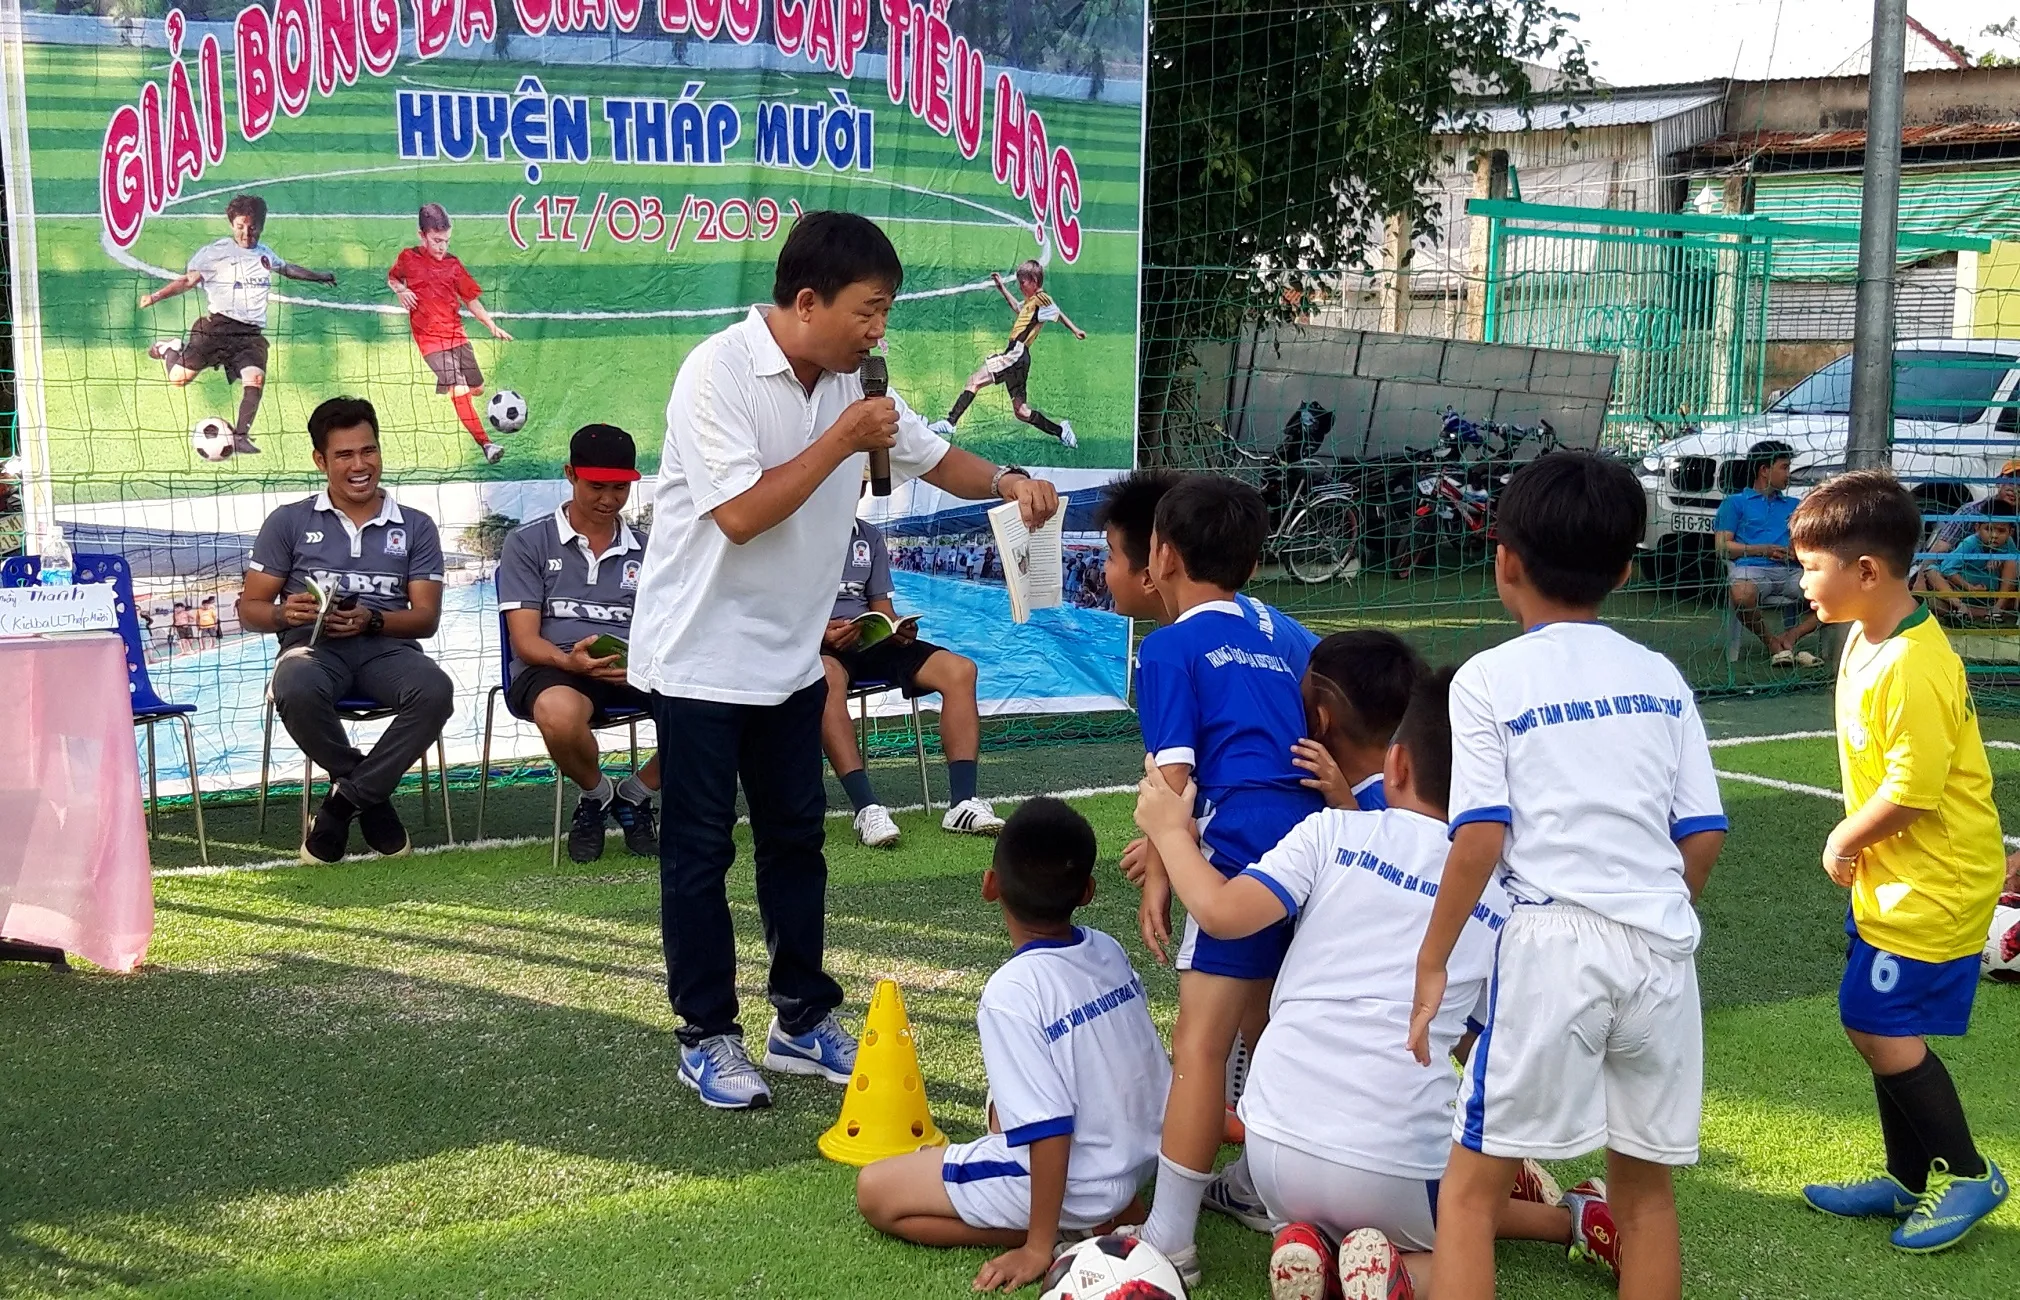 Cựu tuyển thủ Thanh Bình trải lòng về kỹ năng phát triển cầu thủ nhí - Bóng Đá